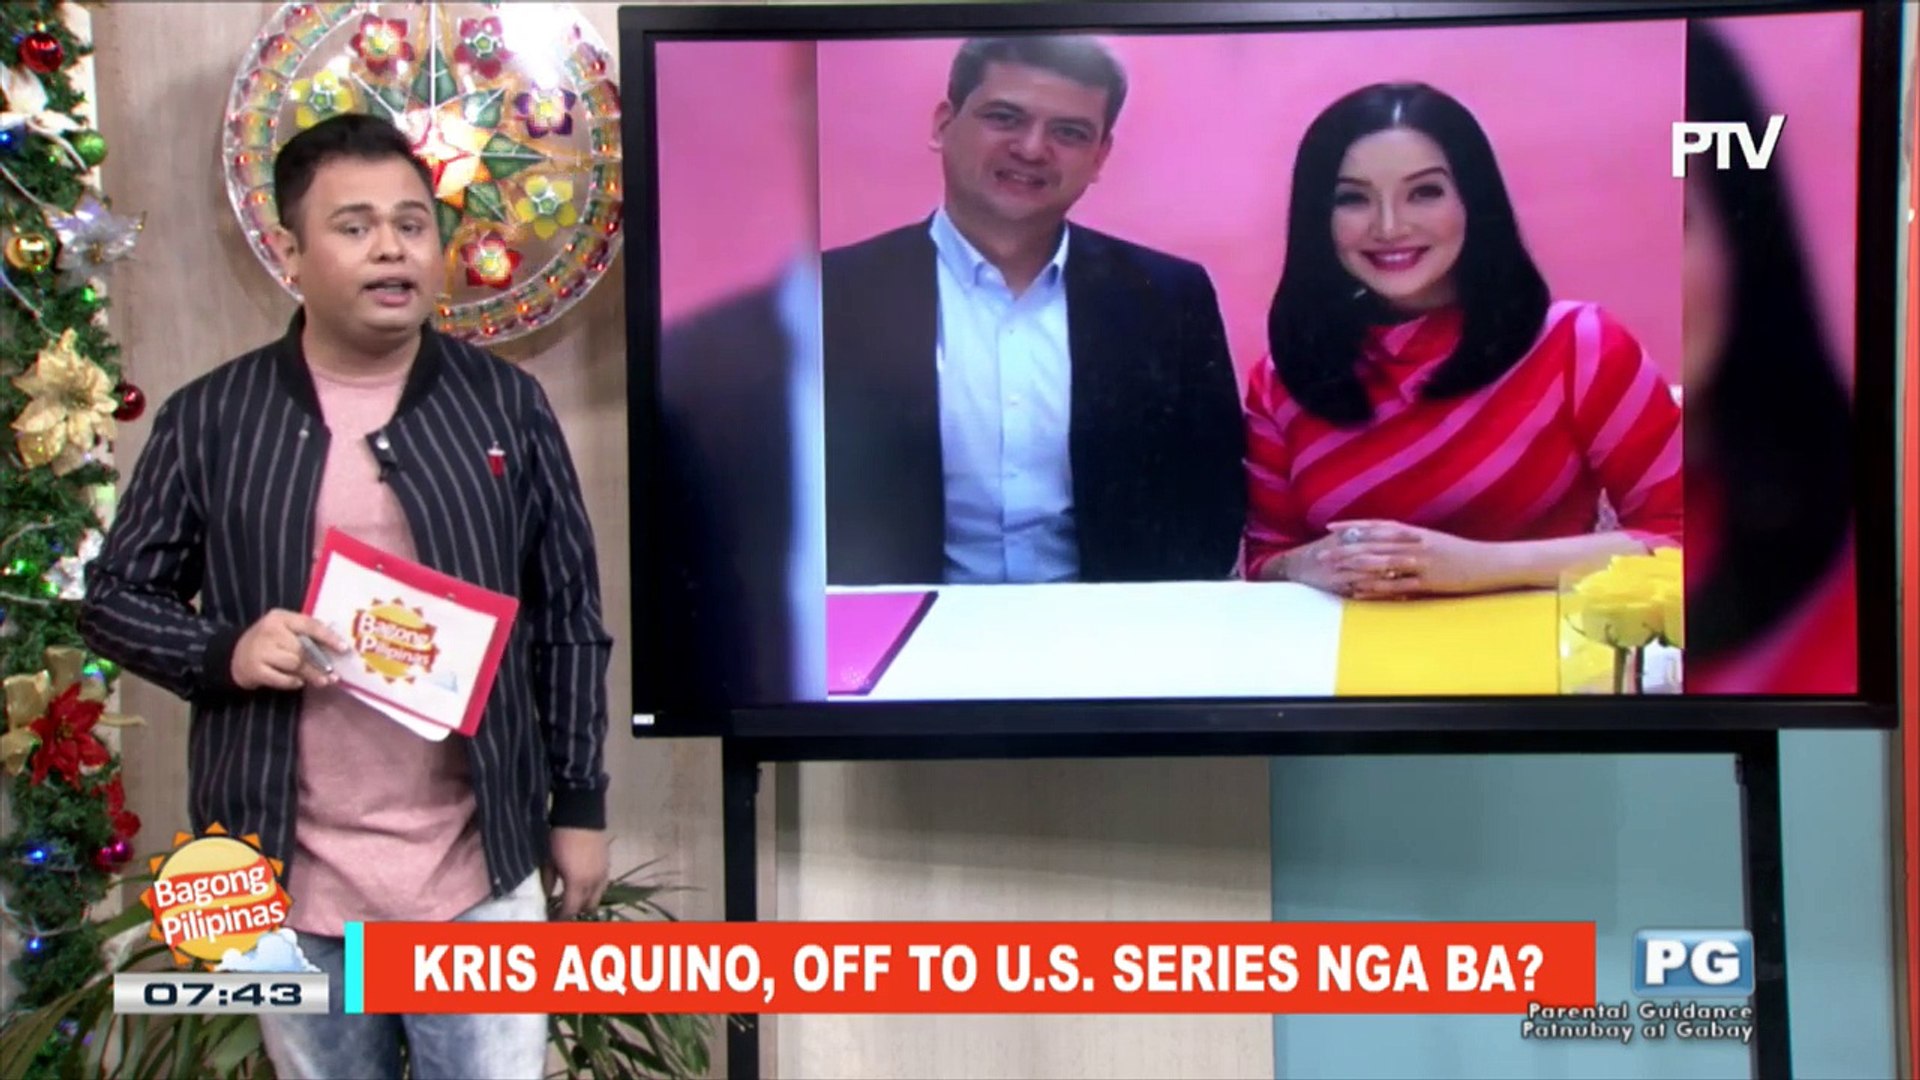 FIFIRAZZI: Kris Aquino, off to US series nga ba?